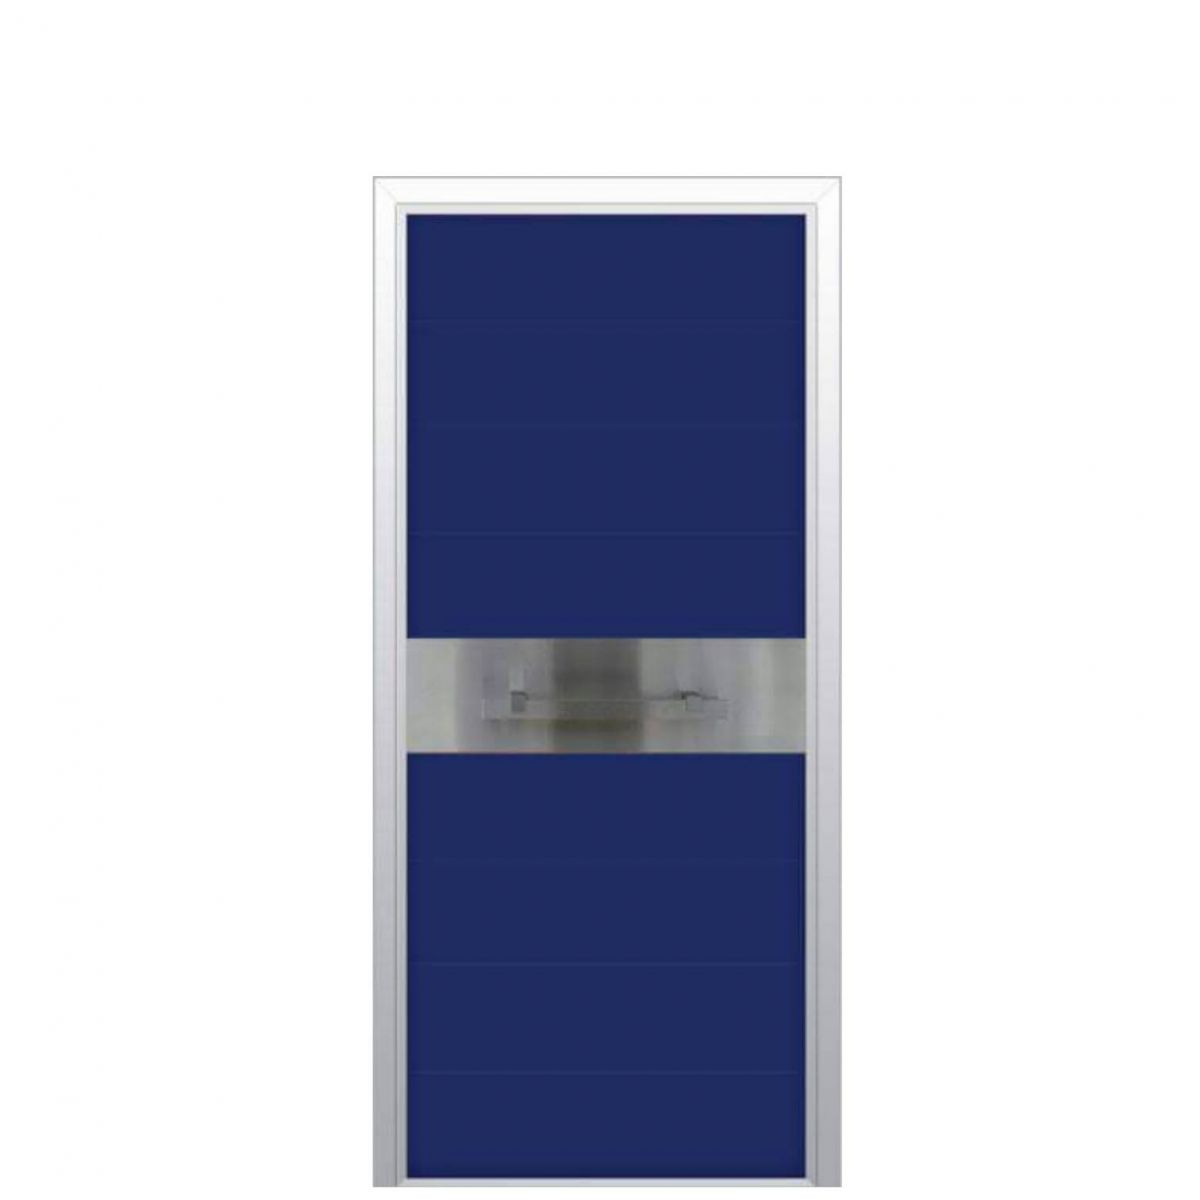 Θωρακισμένη Πόρτα με αυτόνομο σύστημα συναγερμού ΑRGOS ALARM 16